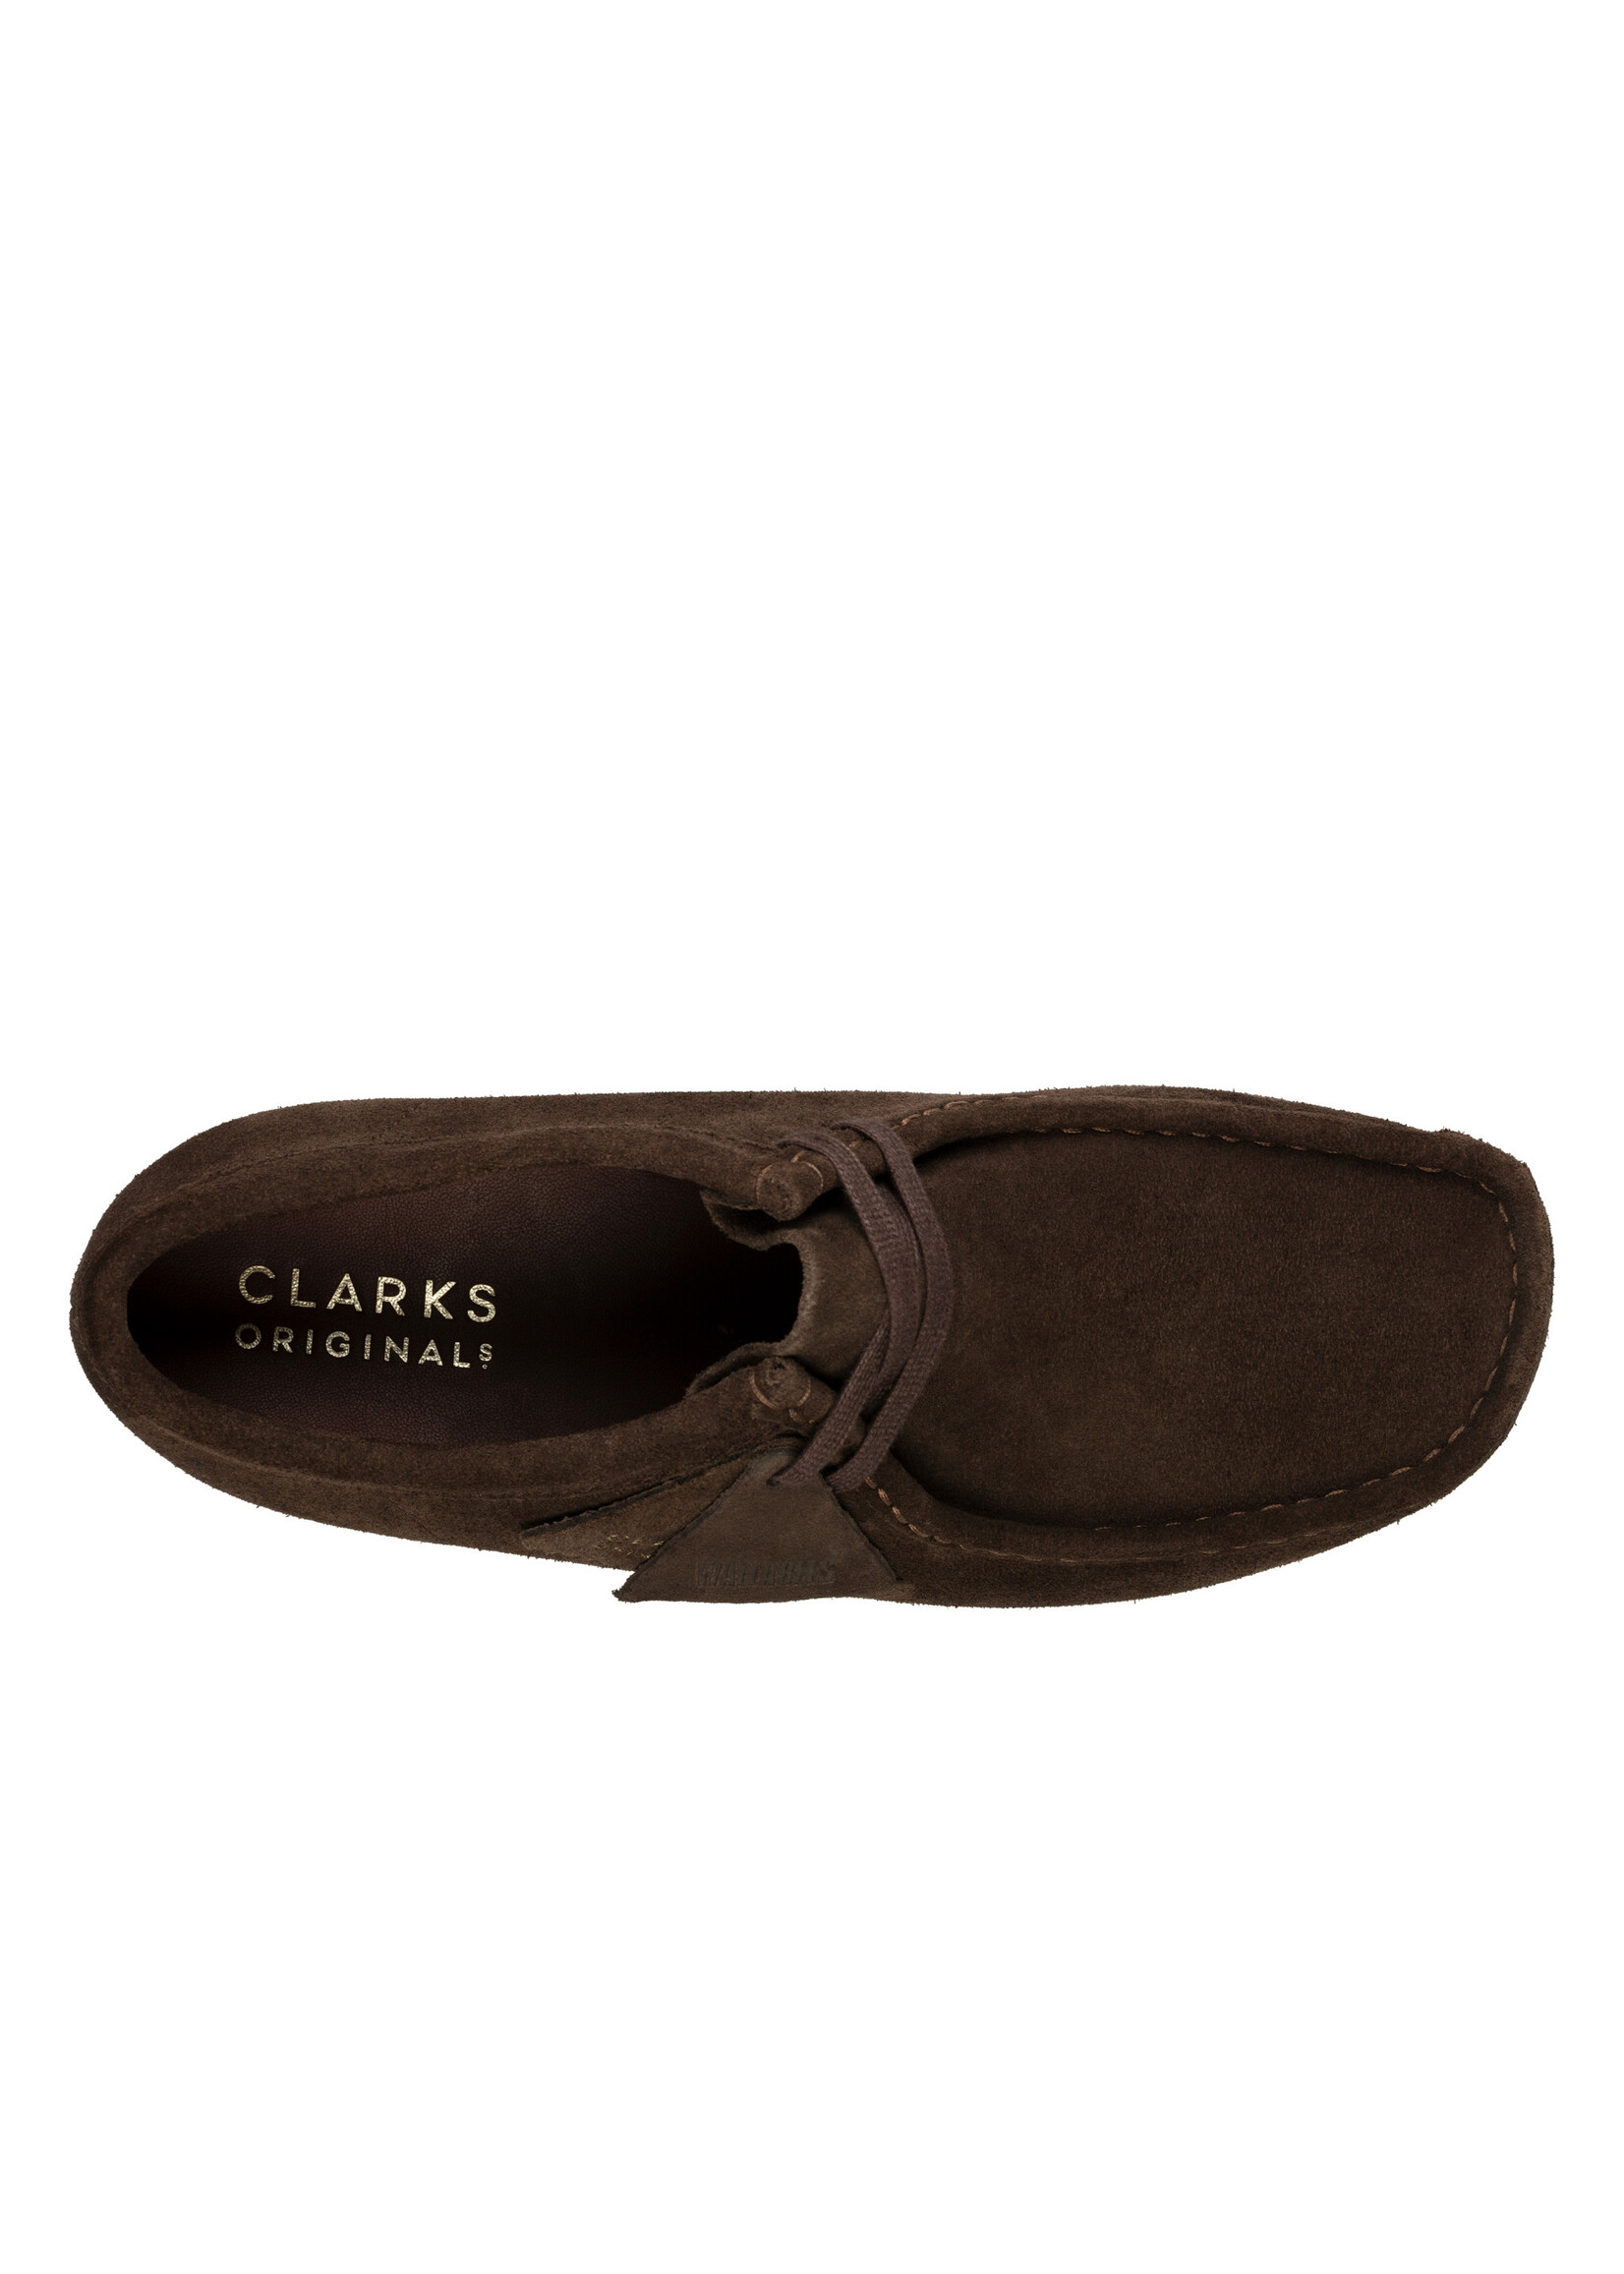 Clarks Wallabee Mens Originals Shoes Dark Brown Suede | 26156606